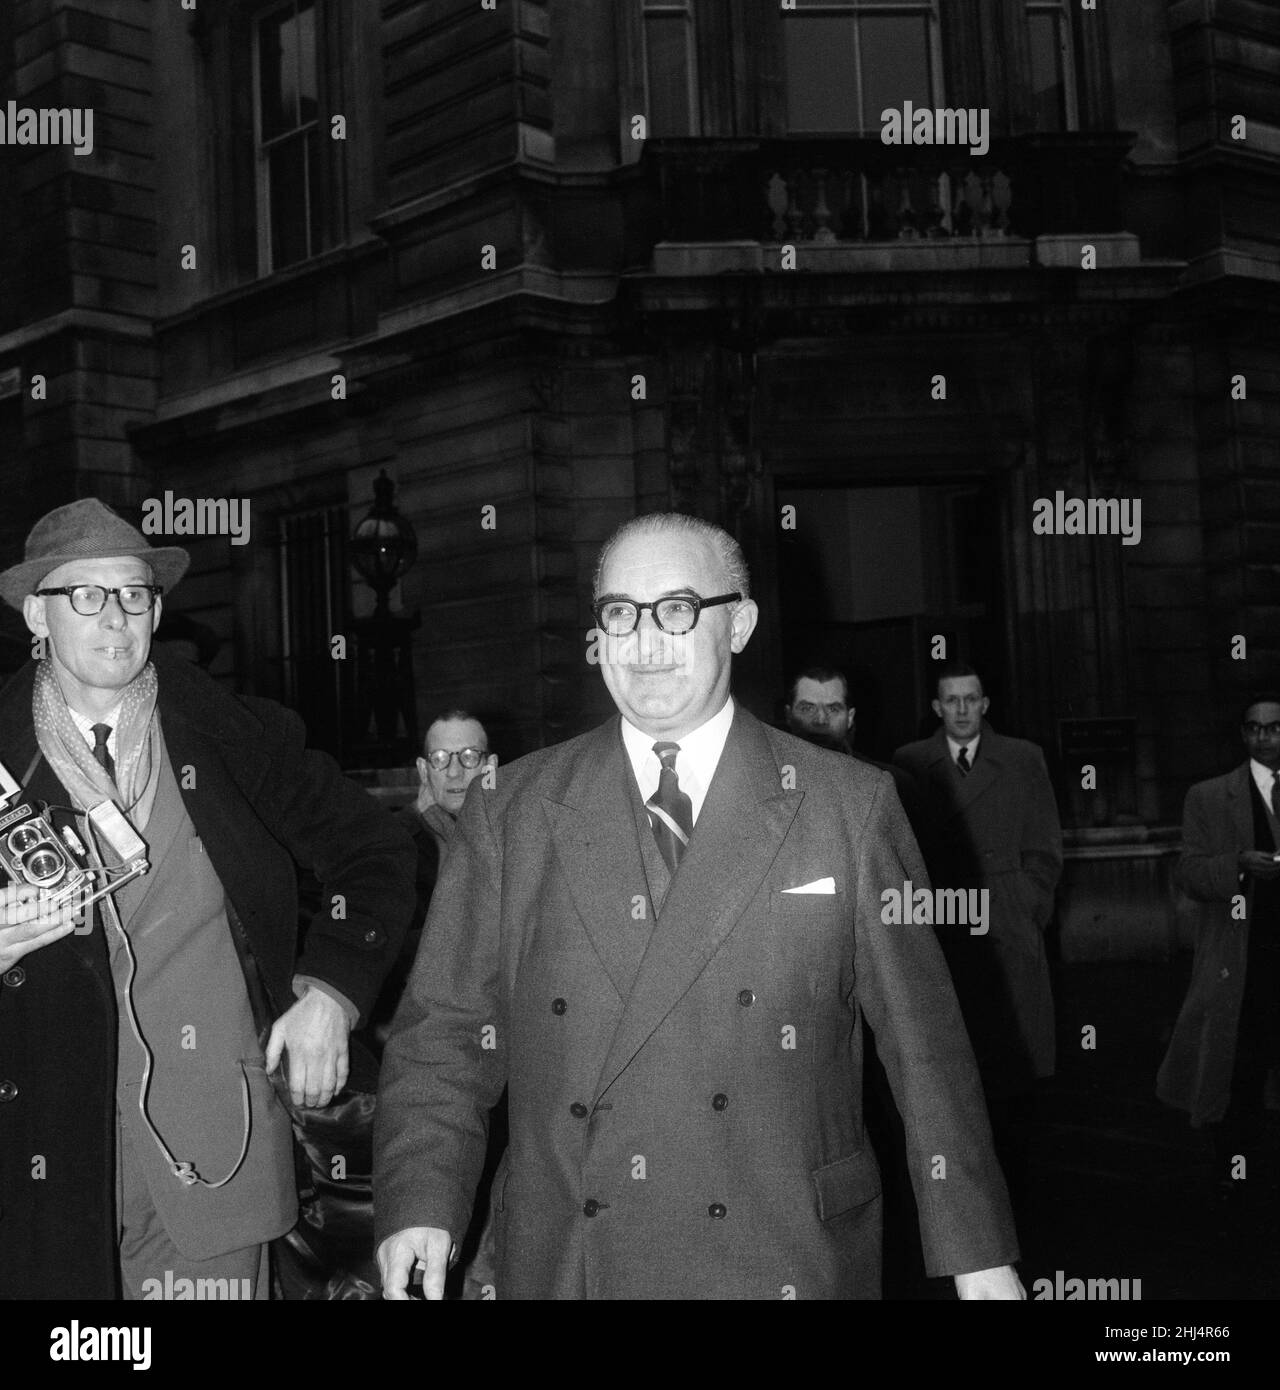 Superintendent George Smith, von Scotland Yard's Special Branch. Teilnahme am Prozess gegen den Portland Spy Ring, einem sowjetischen Spionagering, der in England von Ende 1950s bis 1961 betrieben wurde, als der Kern des Netzwerks von den britischen Sicherheitsdiensten verhaftet wurde. 8th. Februar 1961. Stockfoto